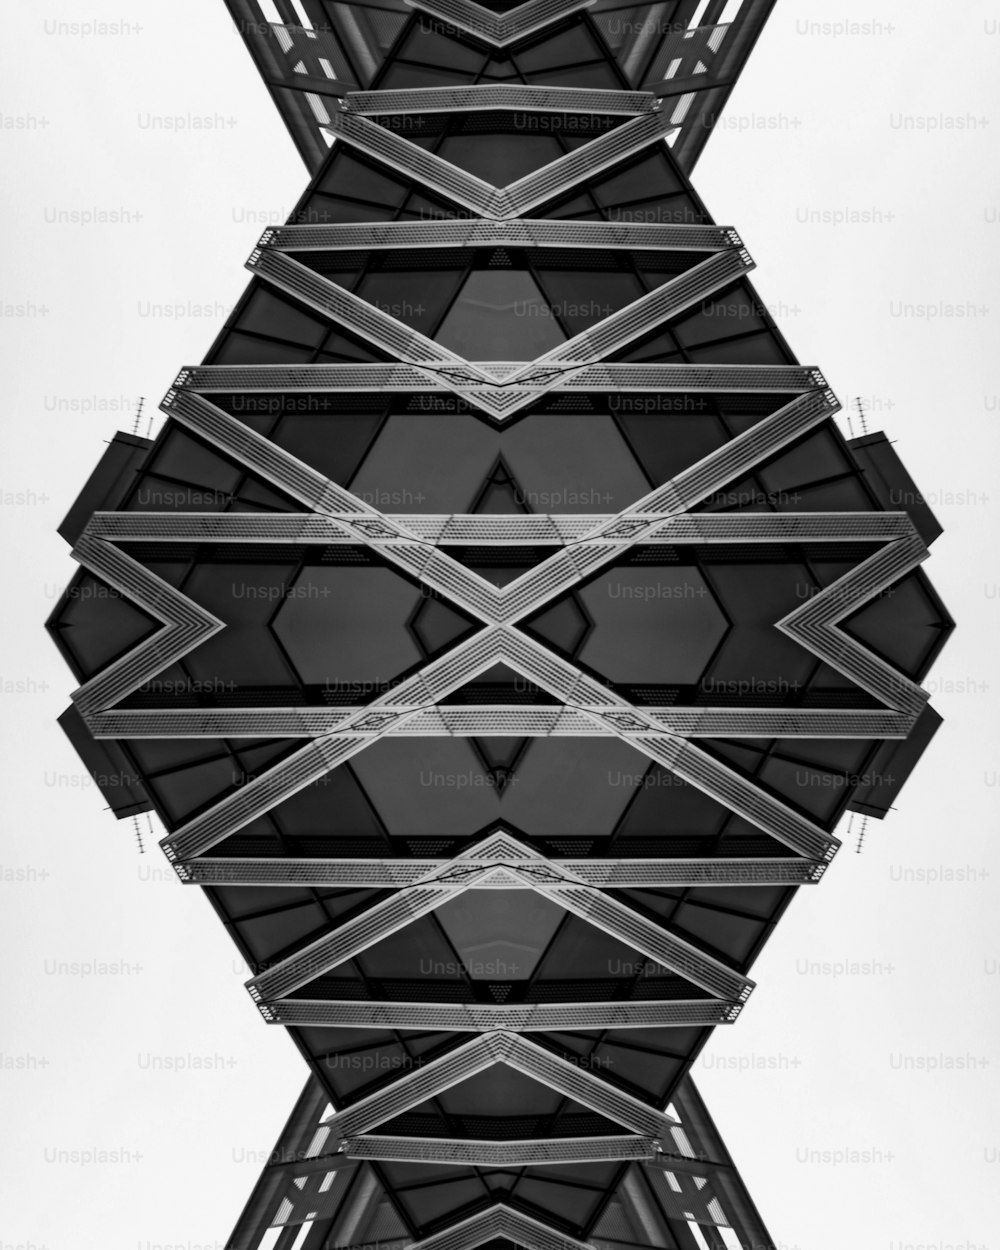 Una foto en blanco y negro de una estructura